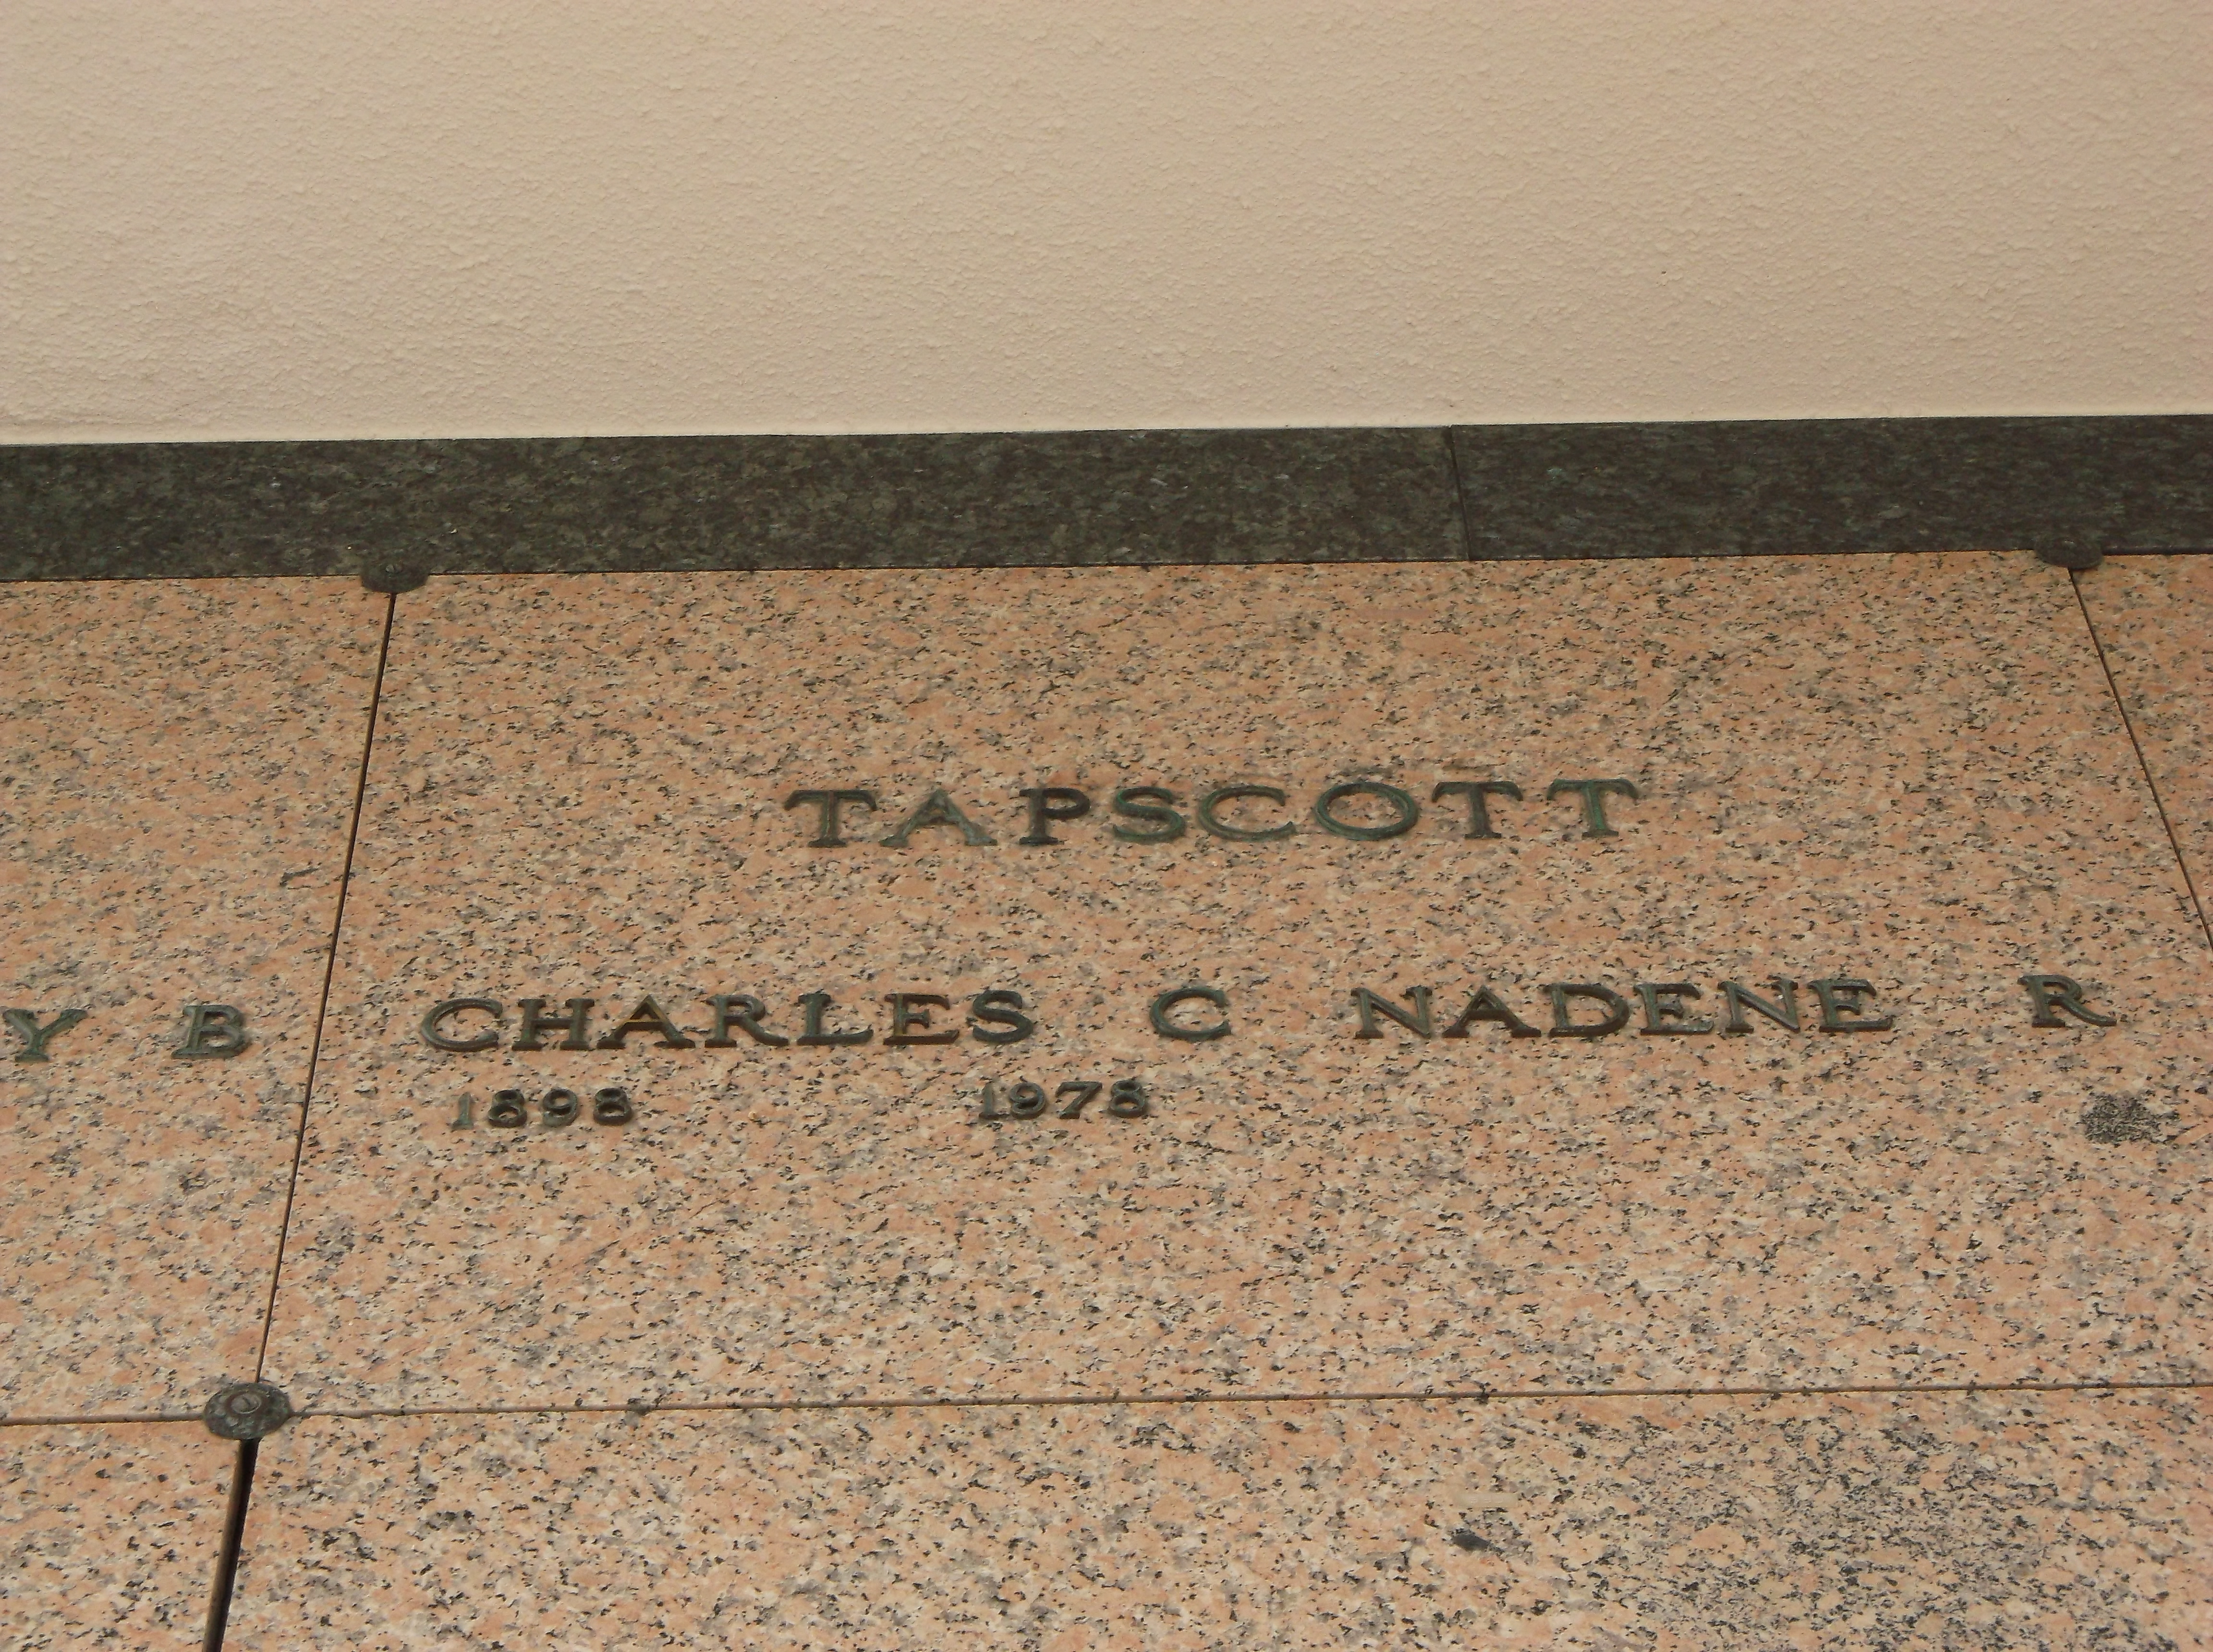 Nadene R Tapscott